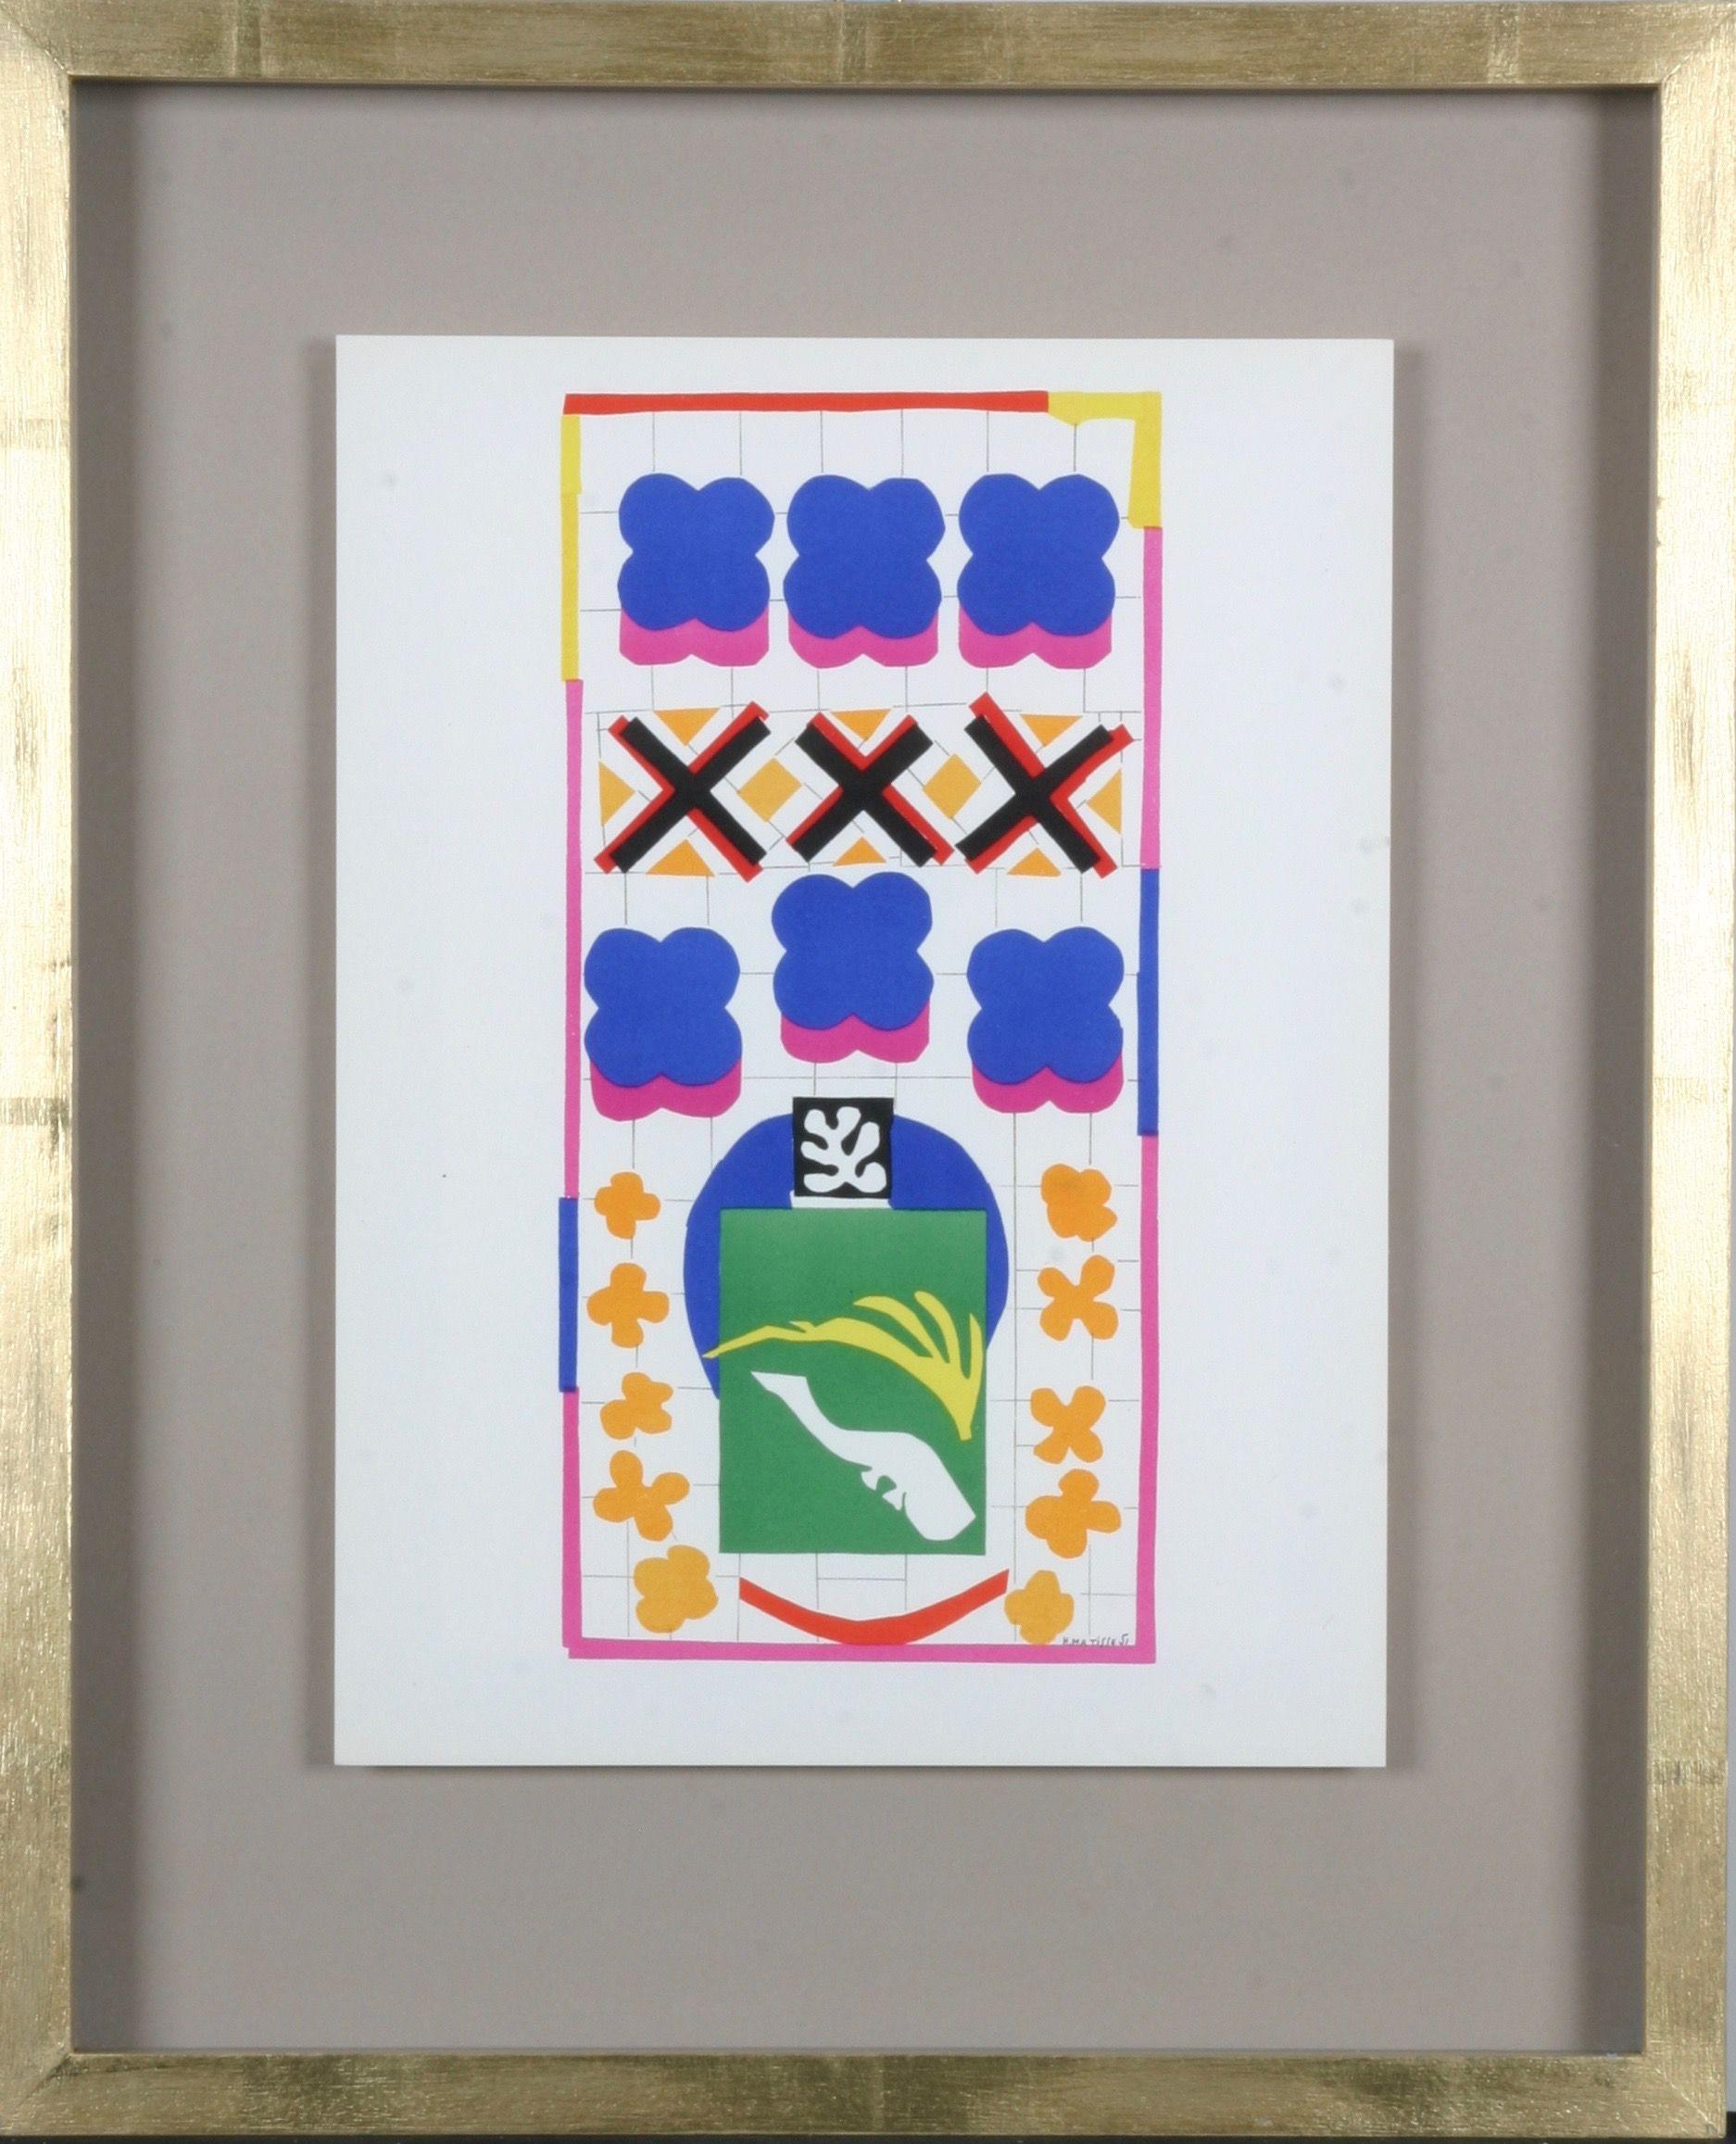 Henri Matisse : Lithographies en couleurs d'après les découpages, épreuve encadrée, 1958 

En 1941, Matisse subit une opération de l'abdomen, après quoi il trouve que la peinture est physiquement éprouvante. Il se consacre de plus en plus à